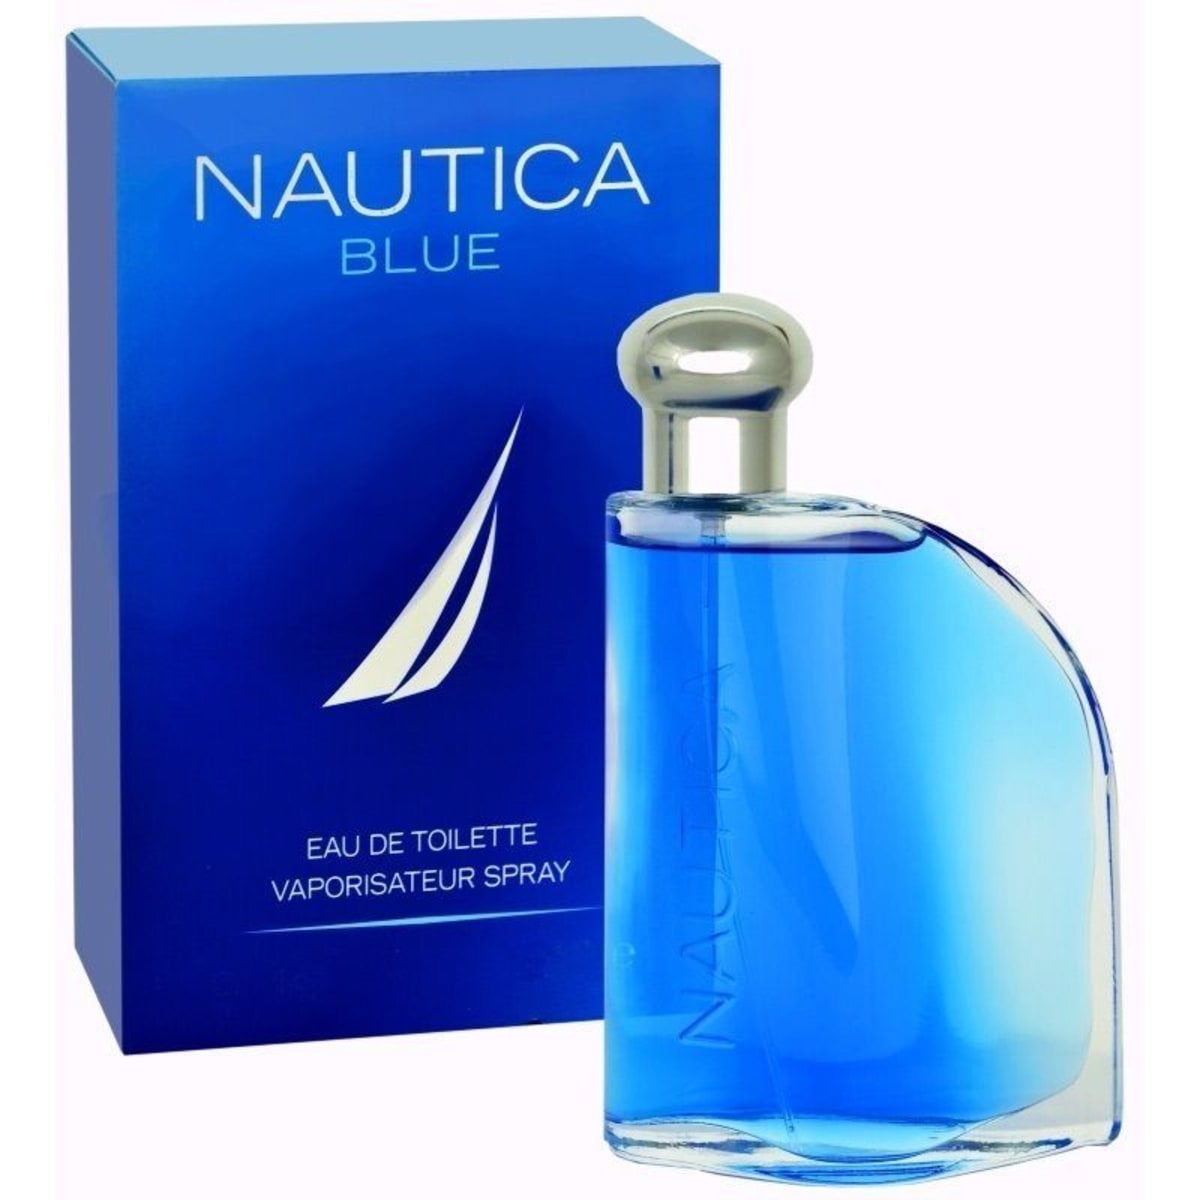 Nautica Blue Eau De Toilette Spray 3.4 oz Men's Fragrance 3412242508027